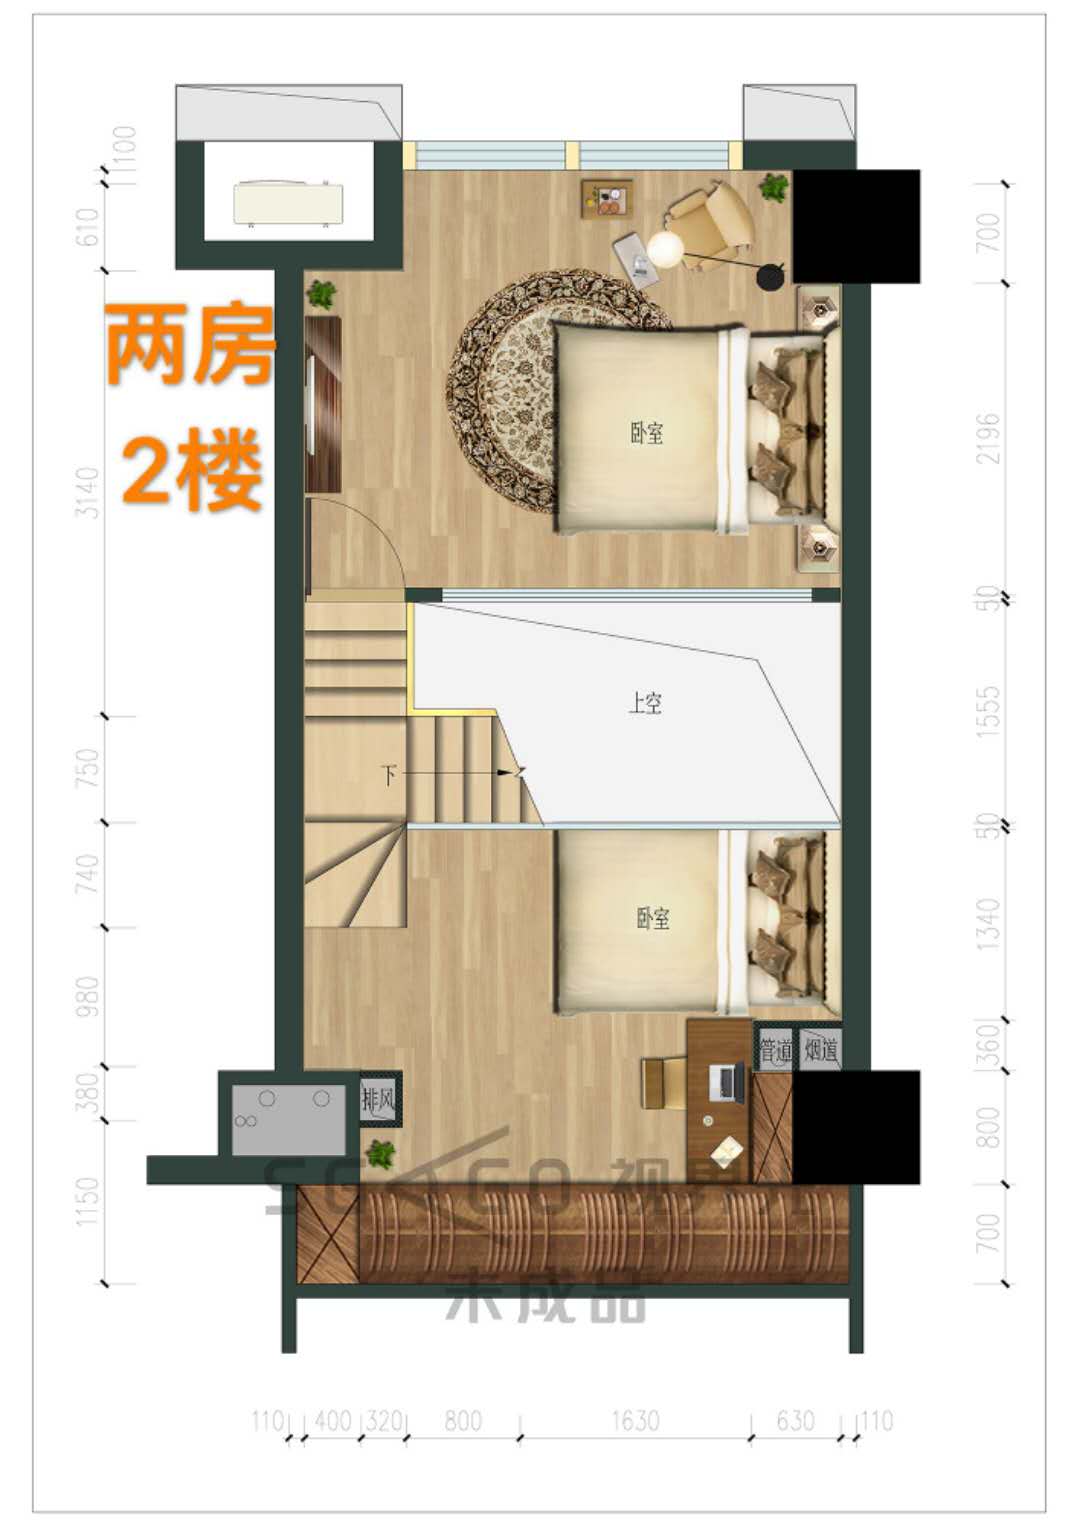 星南站公寓户型-小柯房产网